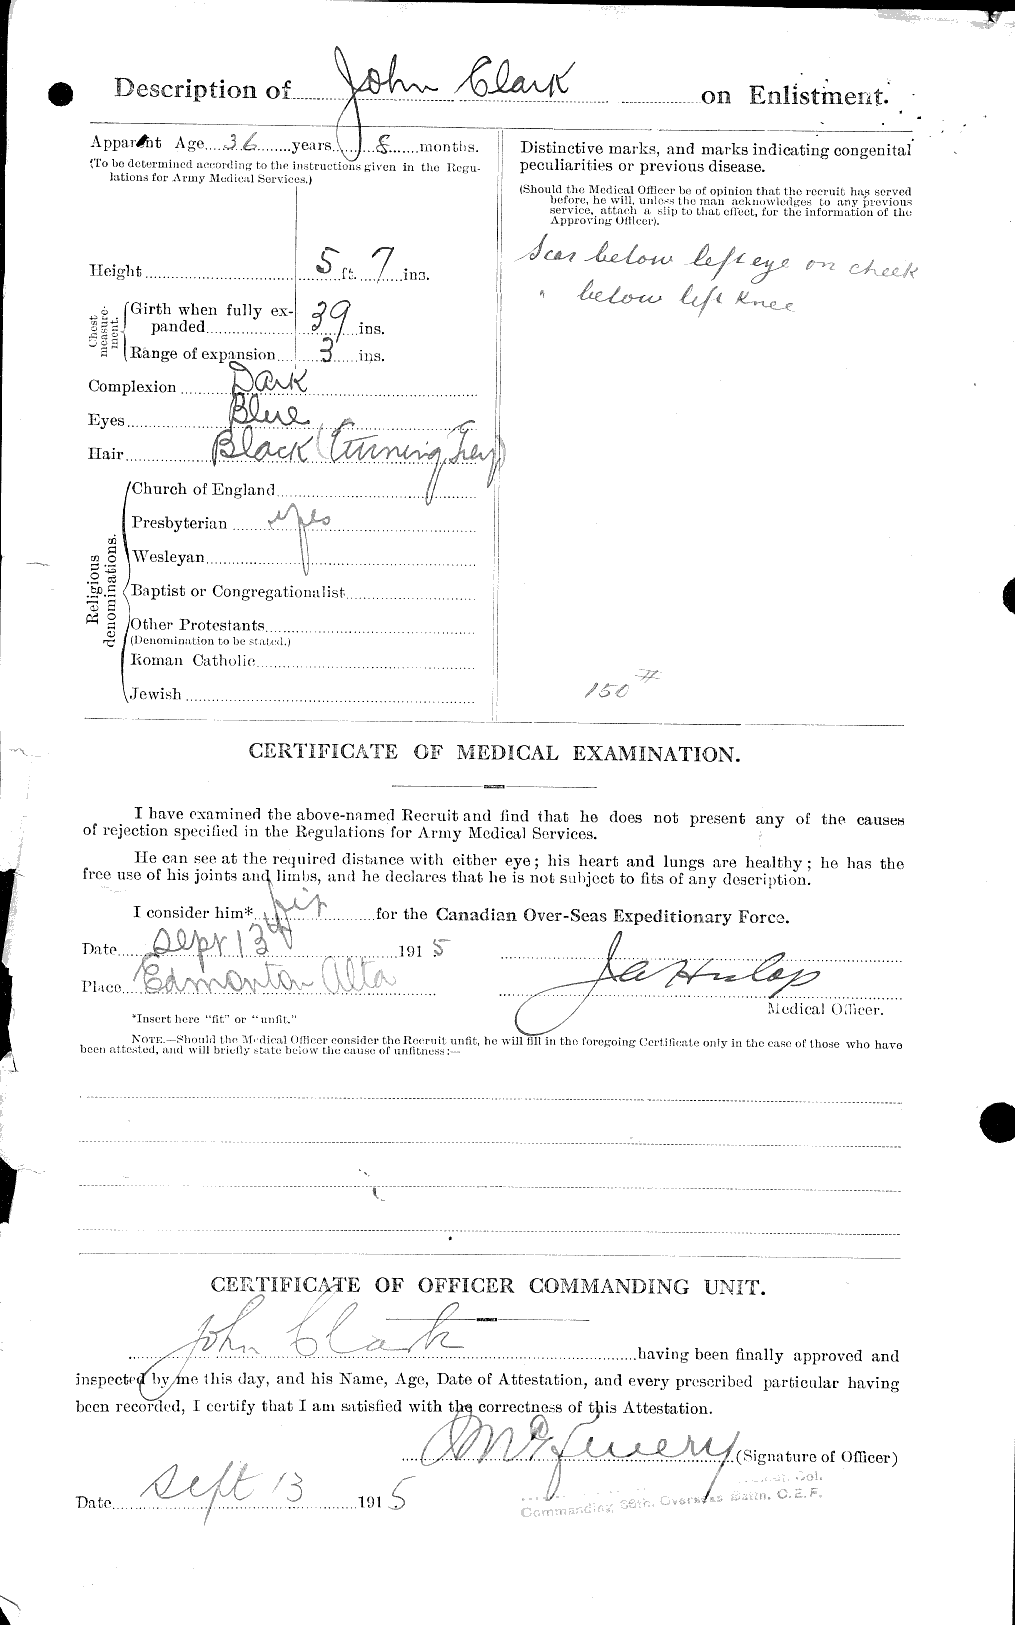 Dossiers du Personnel de la Première Guerre mondiale - CEC 023369b